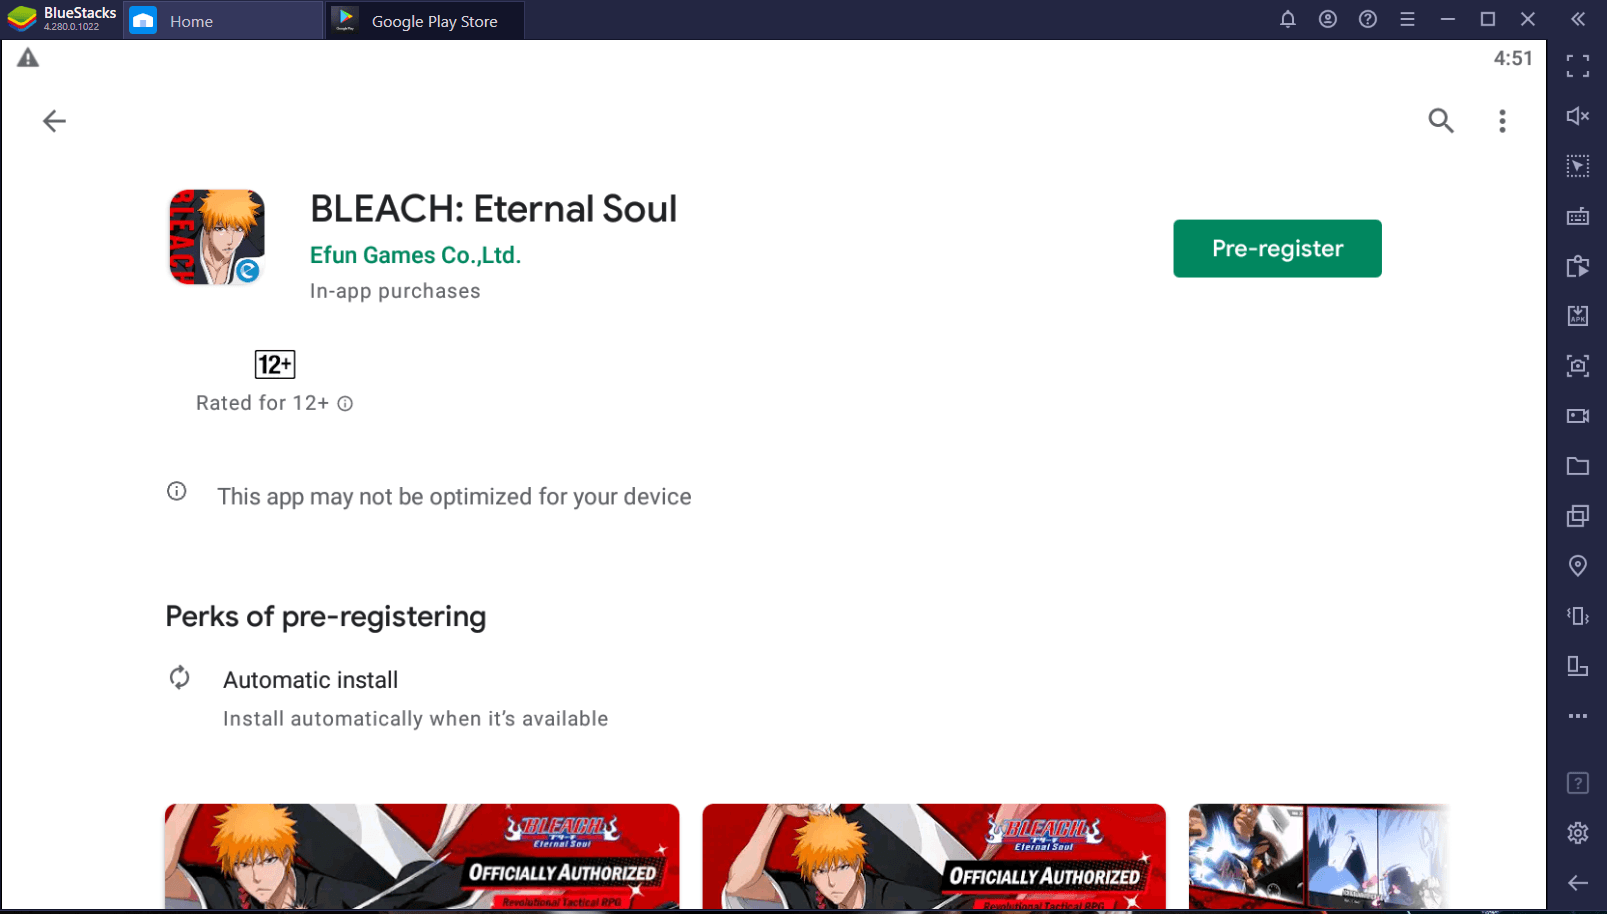 BLEACH: Eternal Soul Buka Pra-Registrasi Untuk Asia Tenggara!